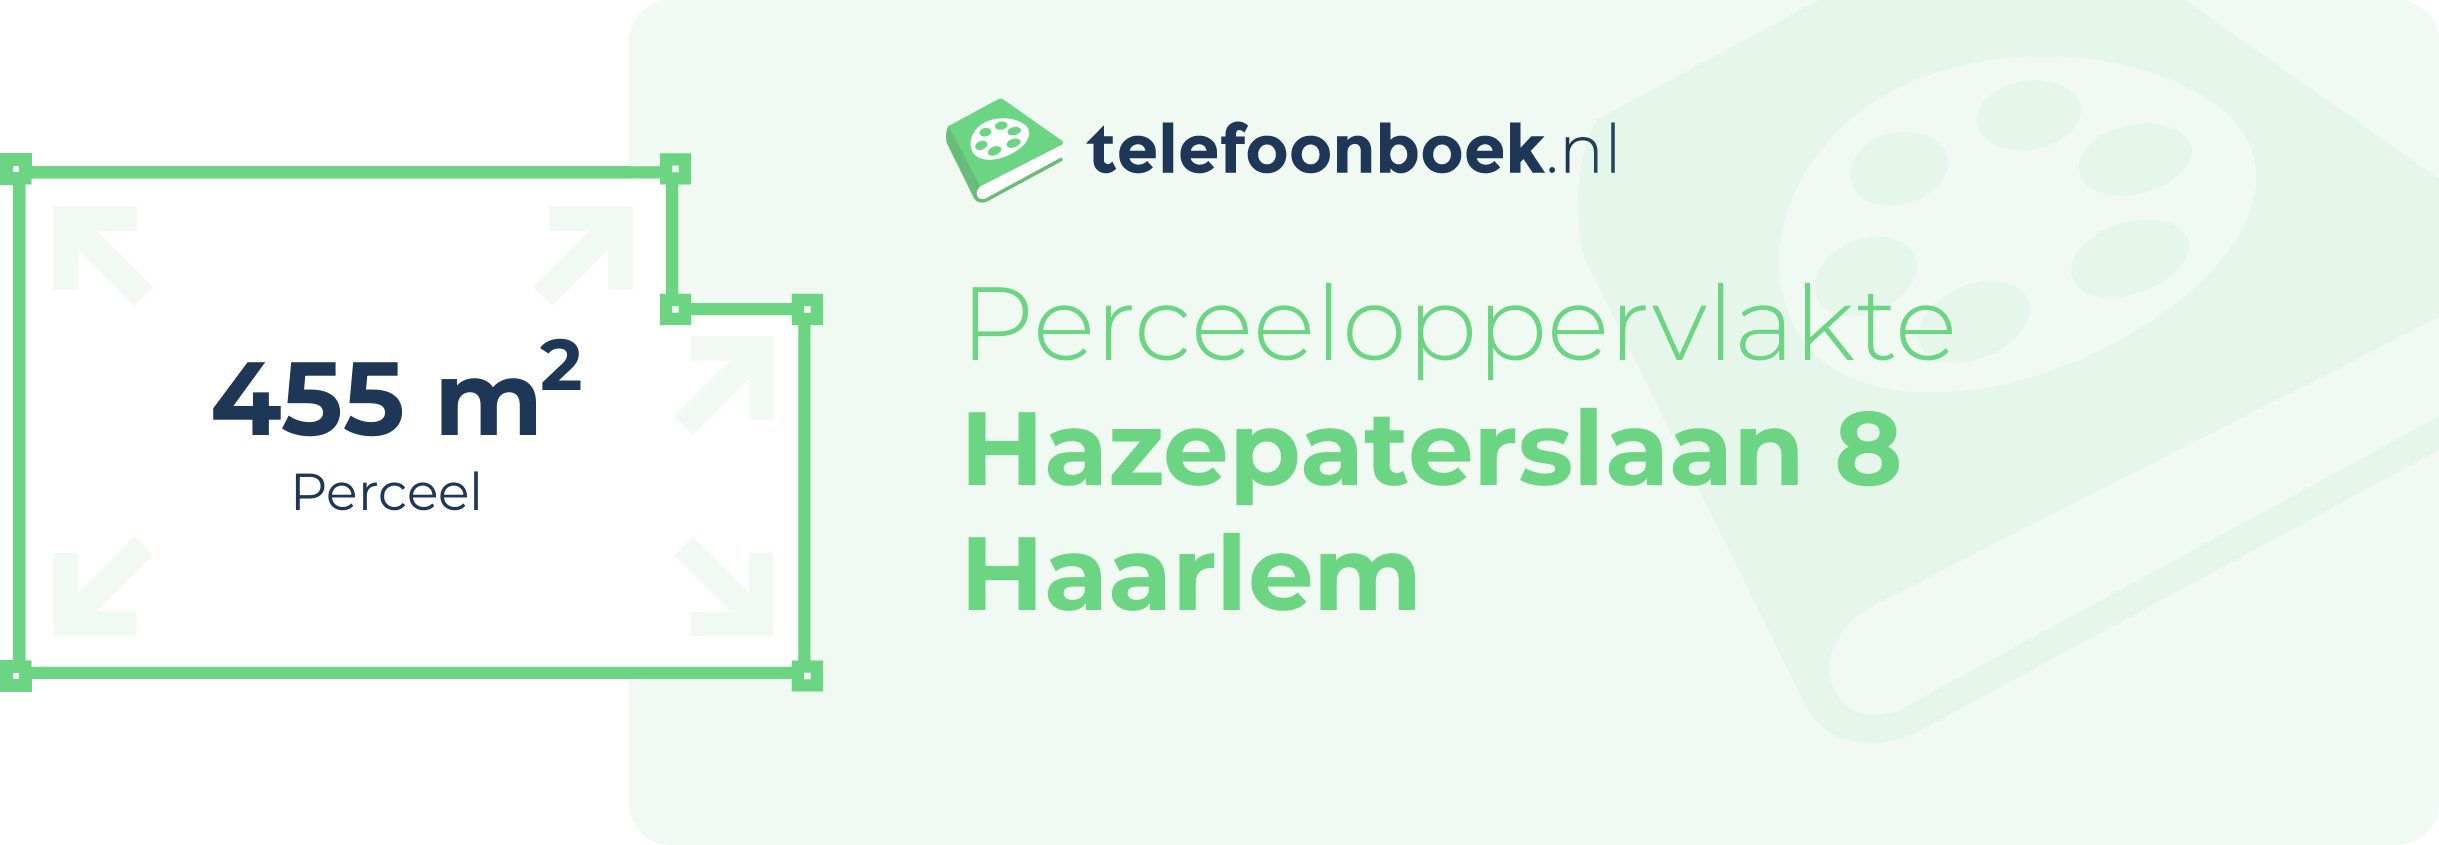 Perceeloppervlakte Hazepaterslaan 8 Haarlem